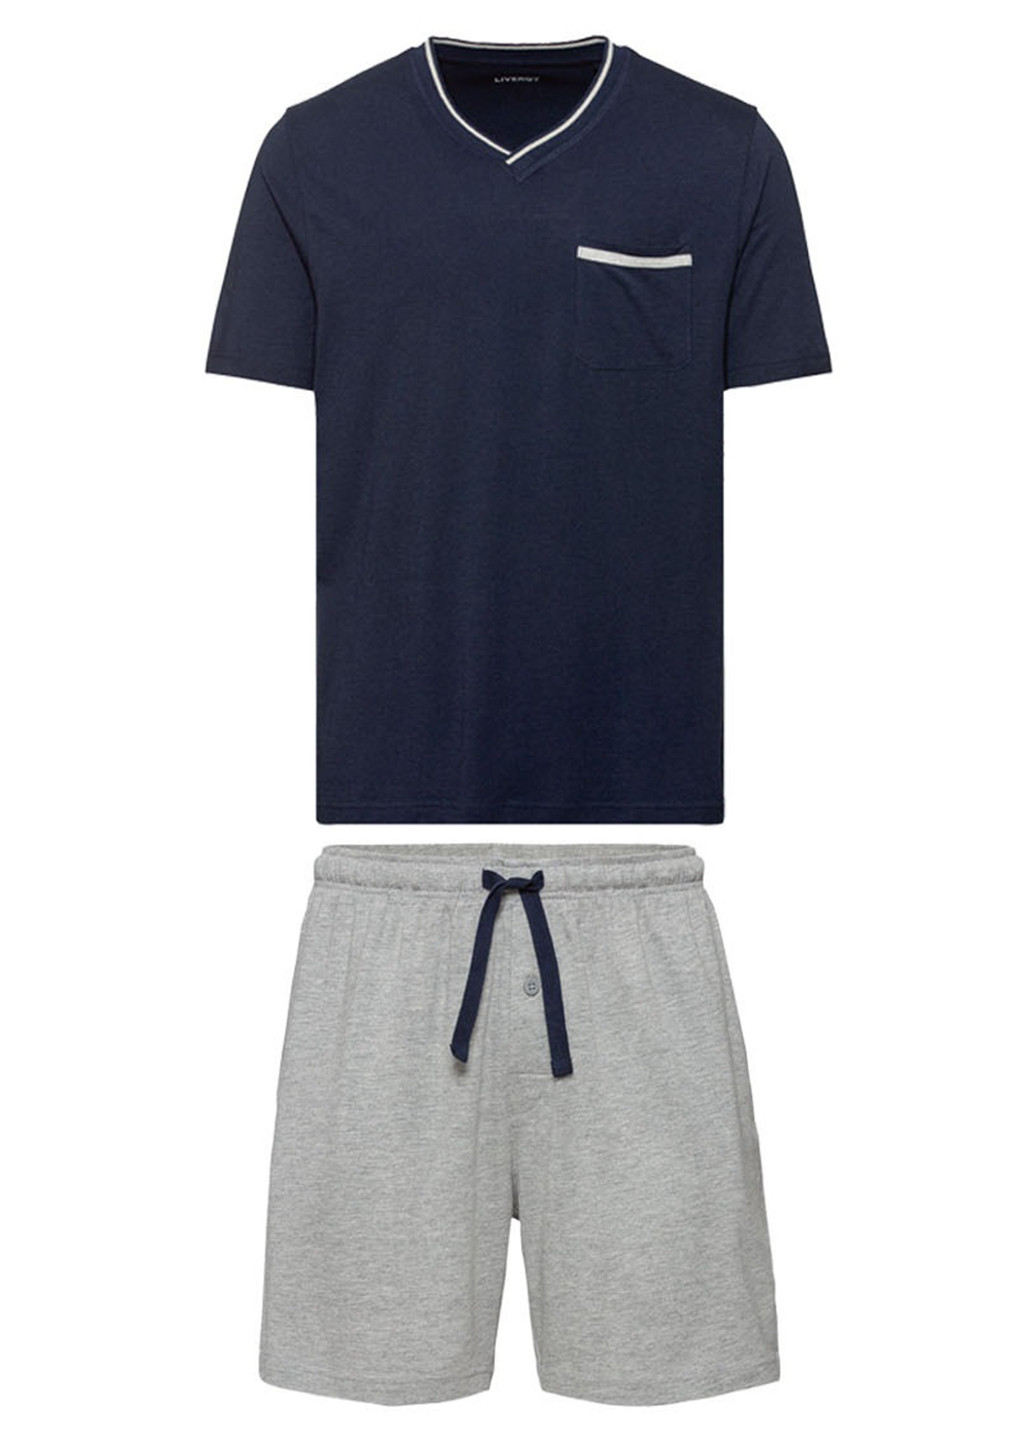 Пижама (футболка, шорты) Livergy футболка + брюки однотонная комбинированная домашняя трикотаж, хлопок